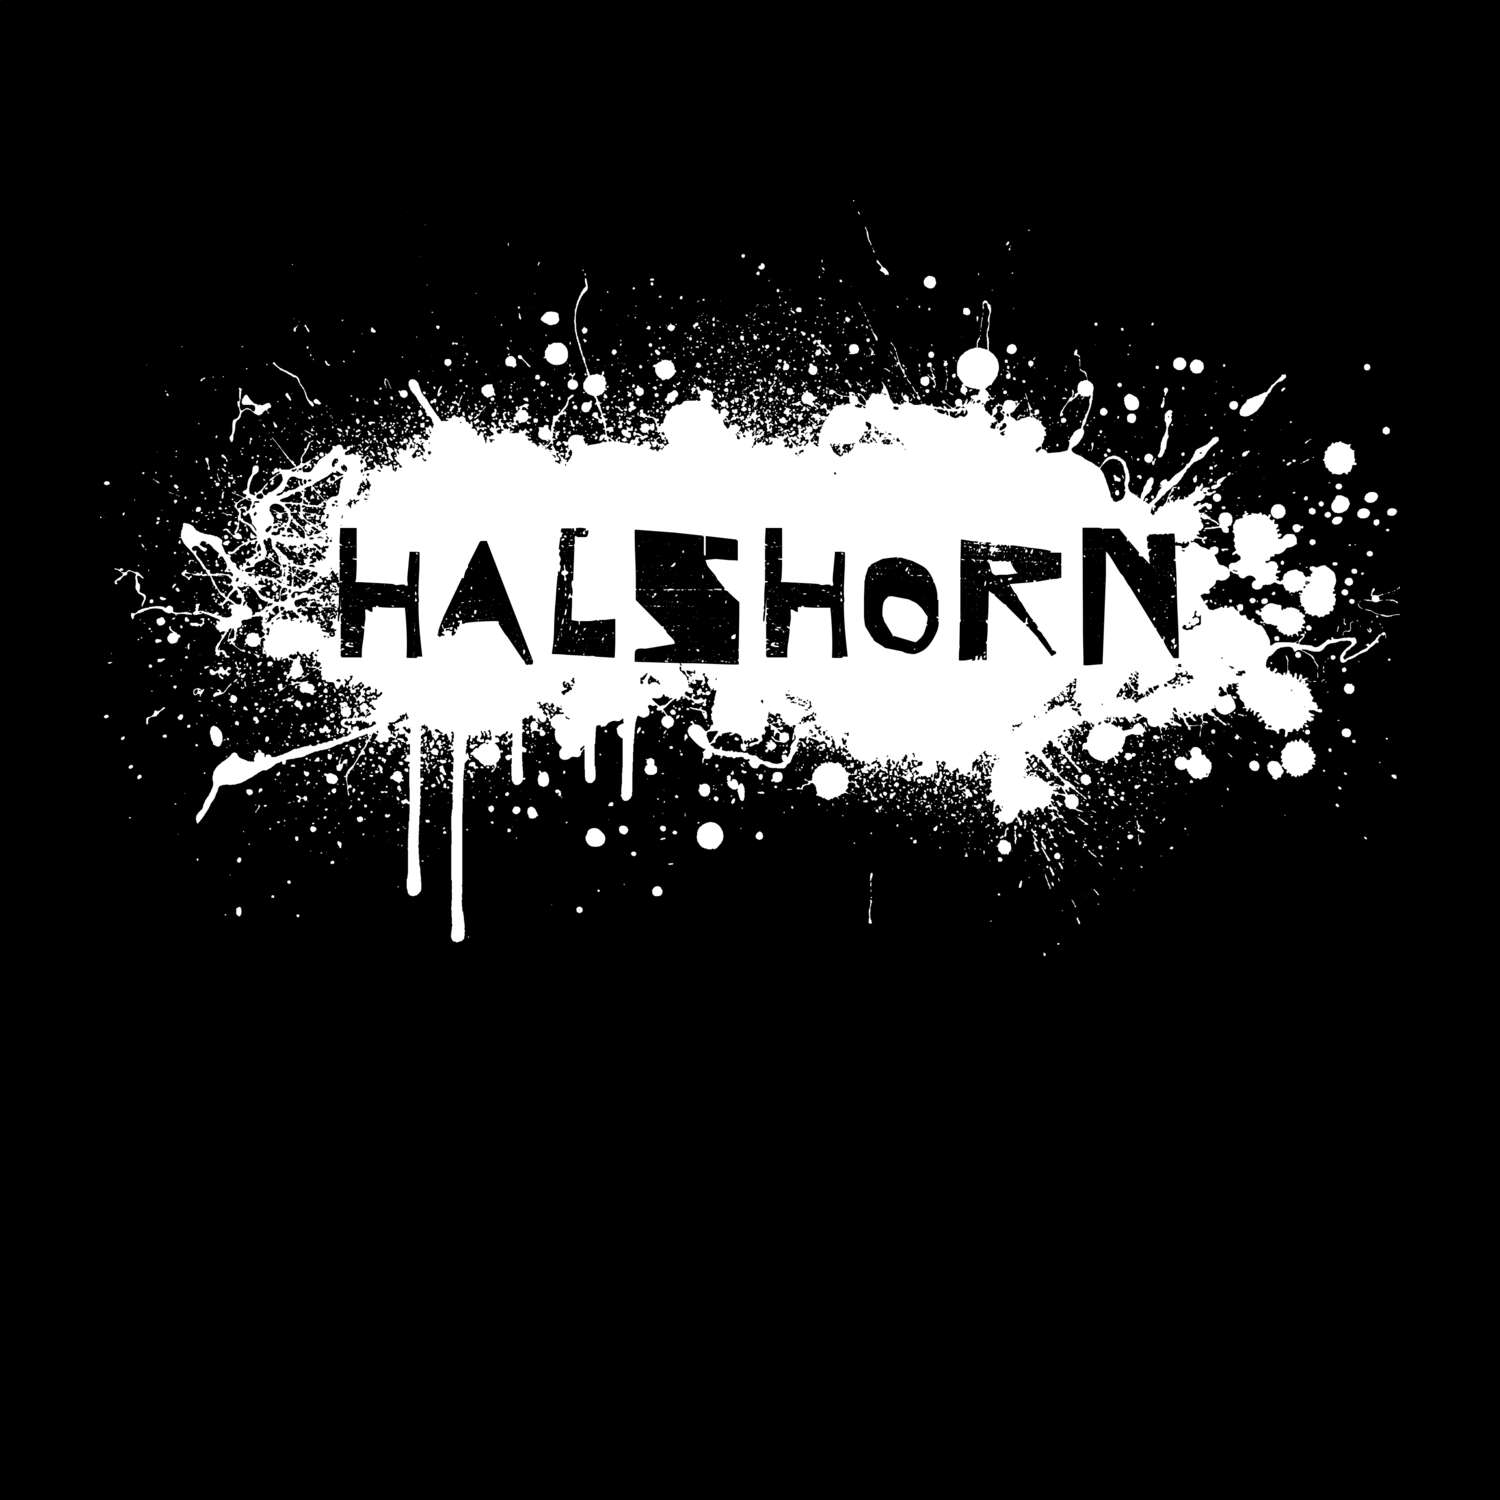 Halshorn T-Shirt »Paint Splash Punk«